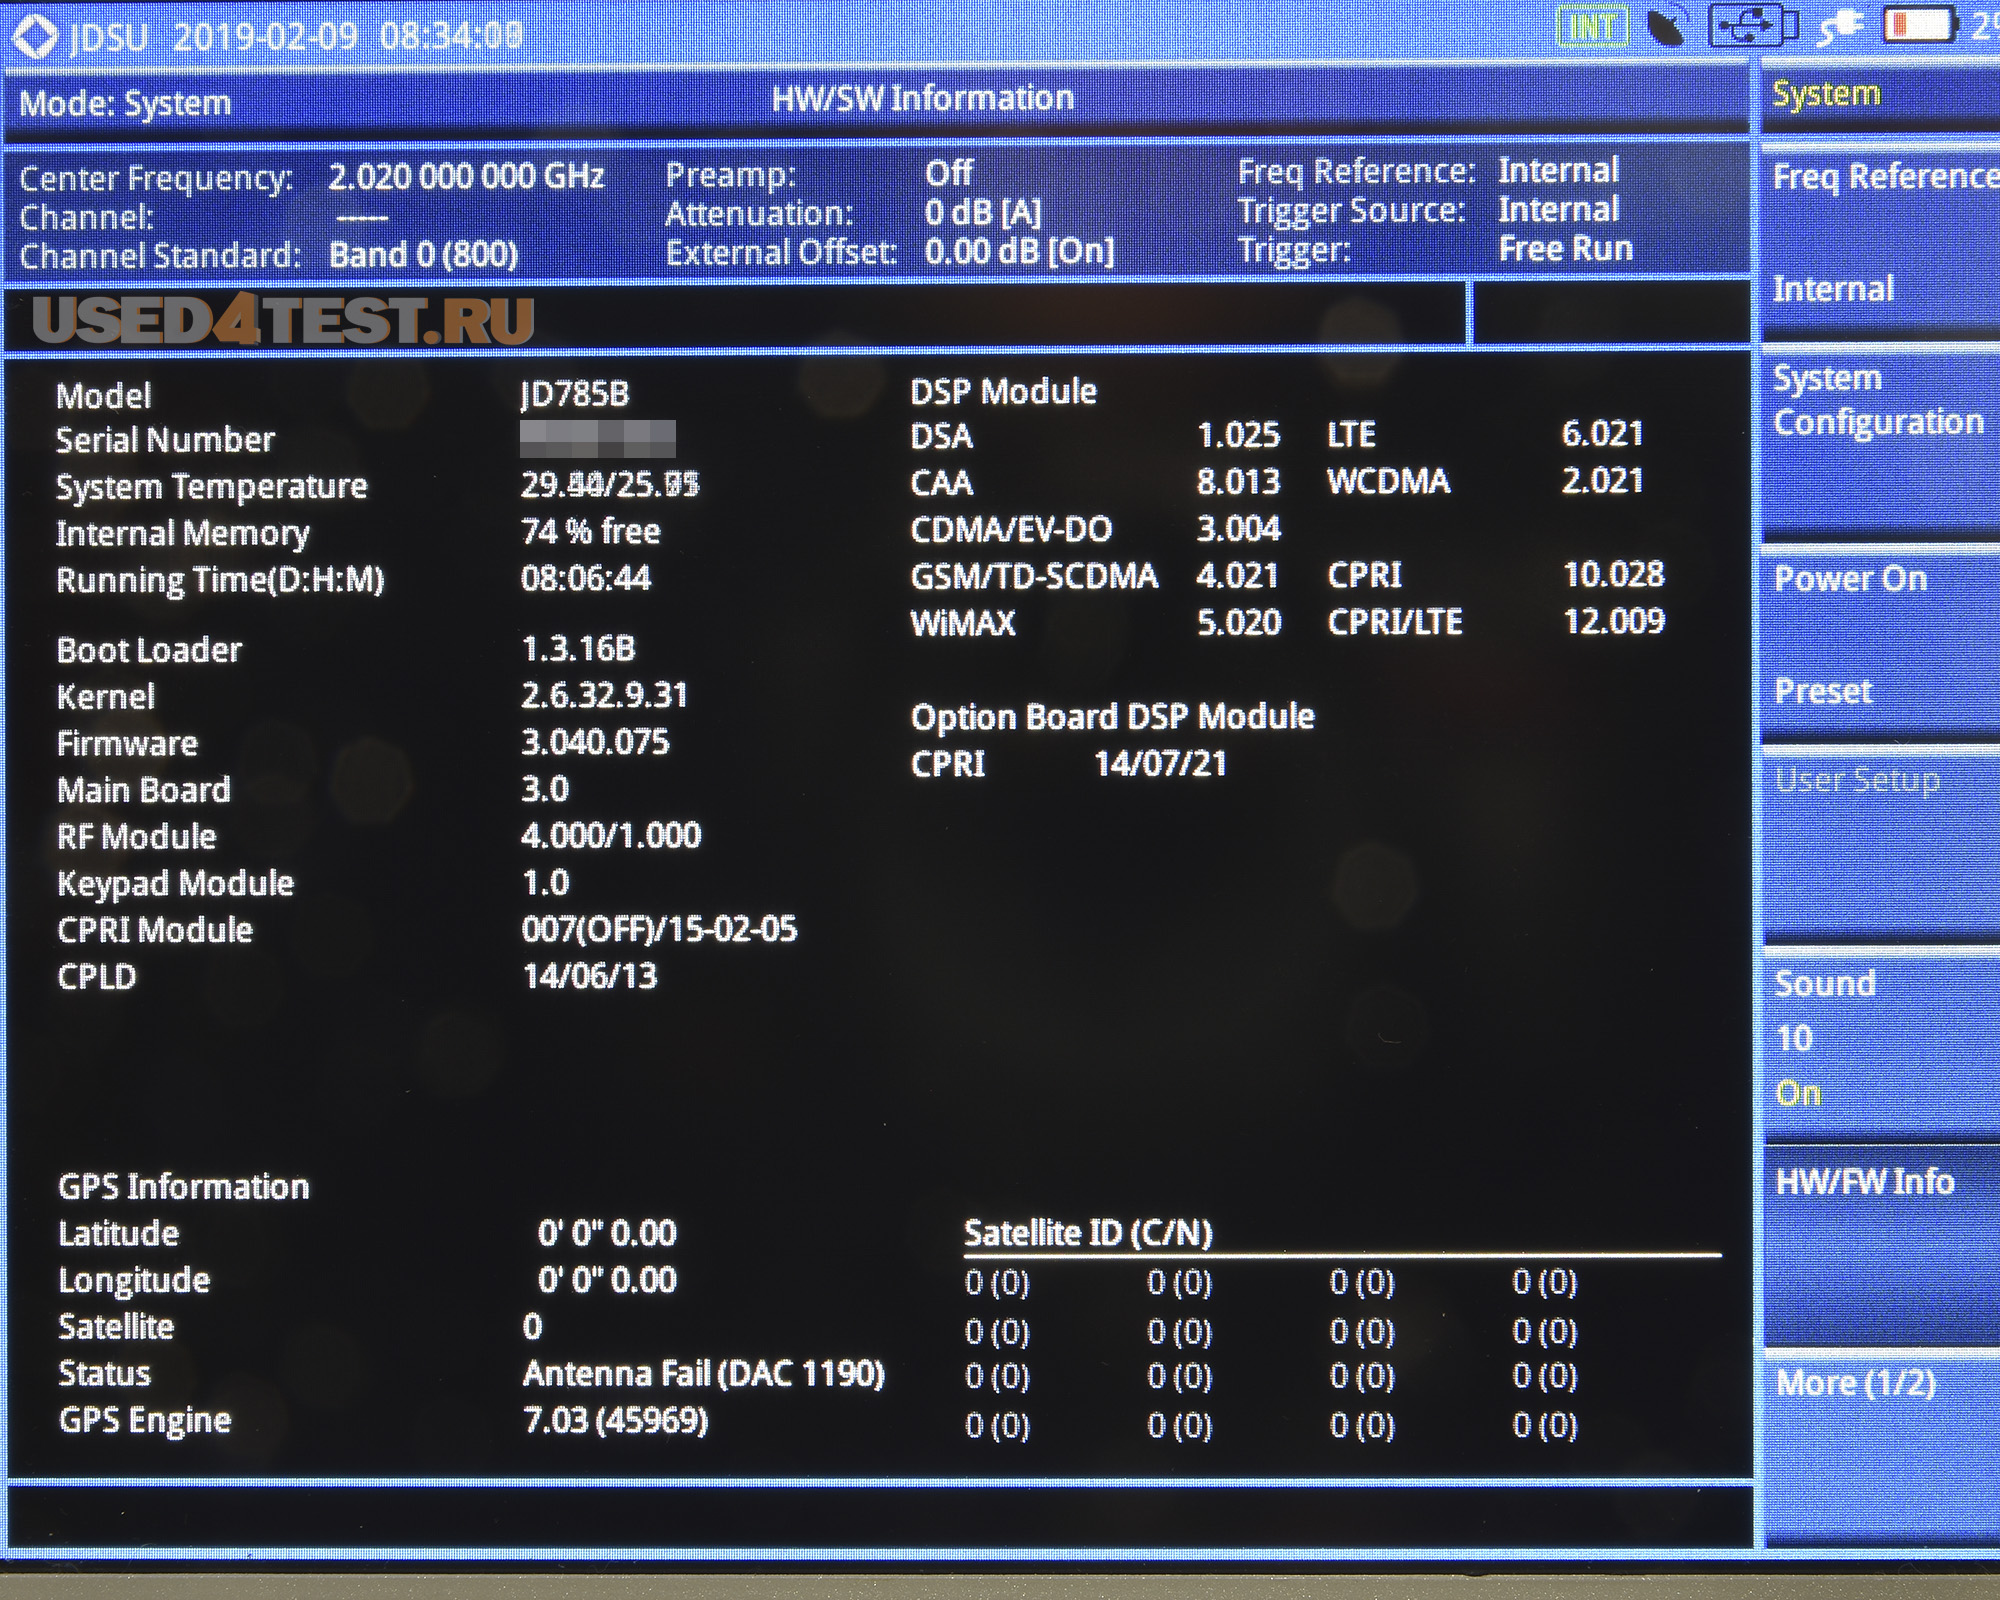 Анализатор базовых станций (анализатор спектра, измеритель мощности, анализатор АФУ)
 JDSU JD785B 
 Анализатор спектра: 9 кГц — 8 ГГц
 
Анализатор АФУ: 5 МГц — 6 ГГц
 
Измеритель мощности: 10 МГц — 8 ГГц
 